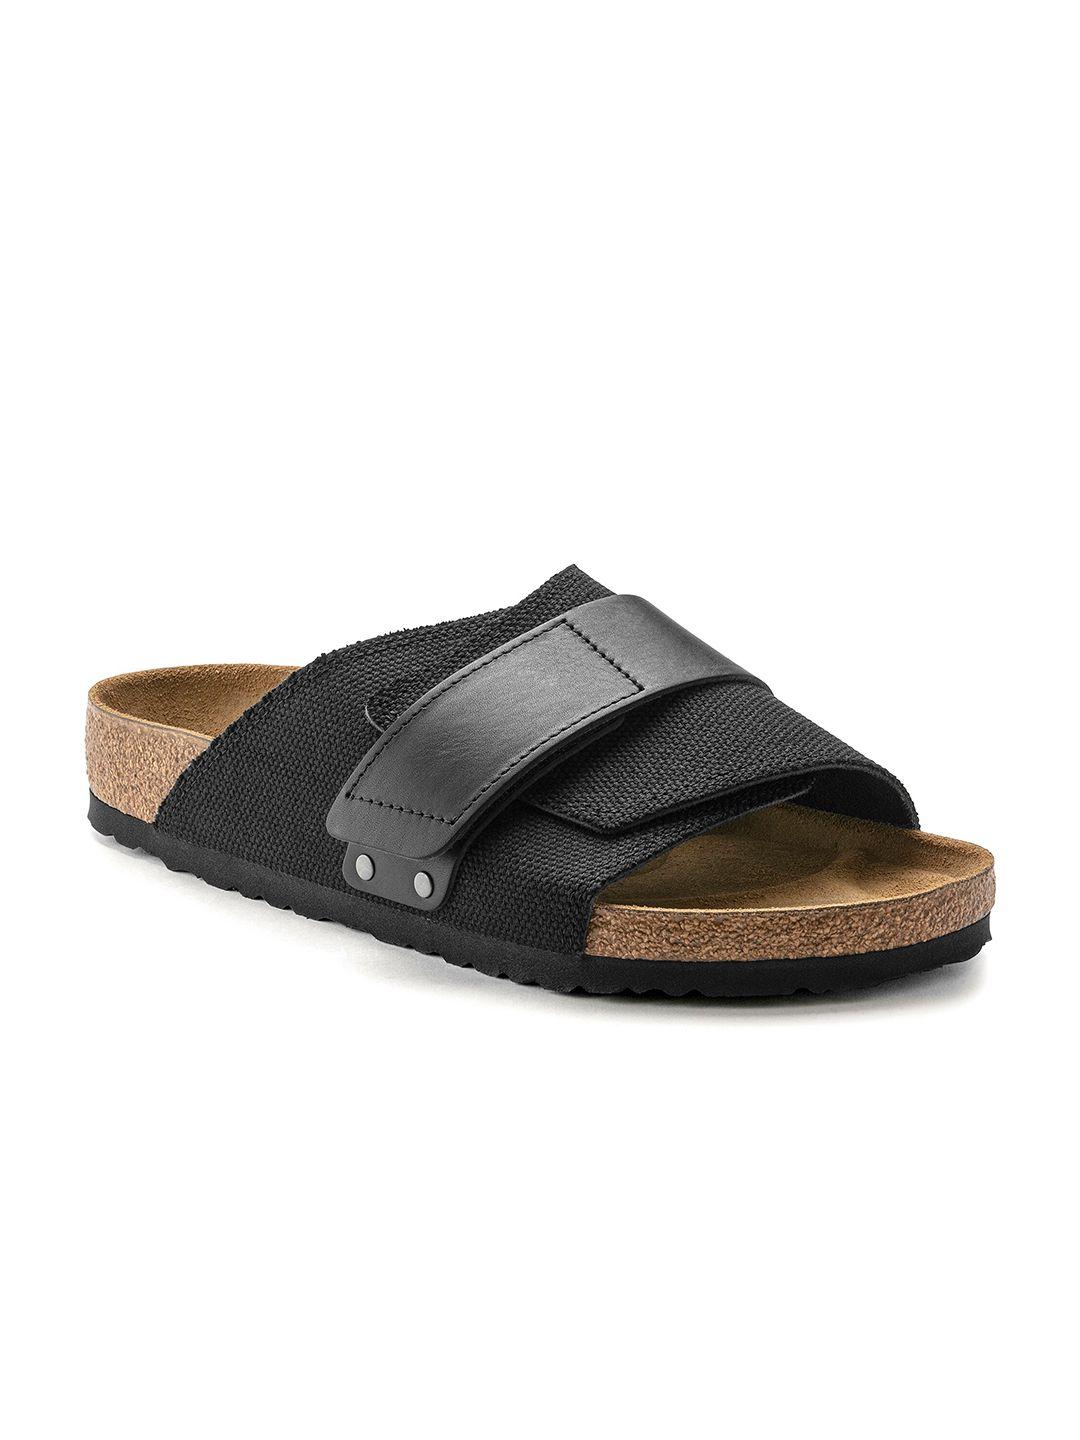 birkenstock men kyoto regular width one-strap comfort sandals